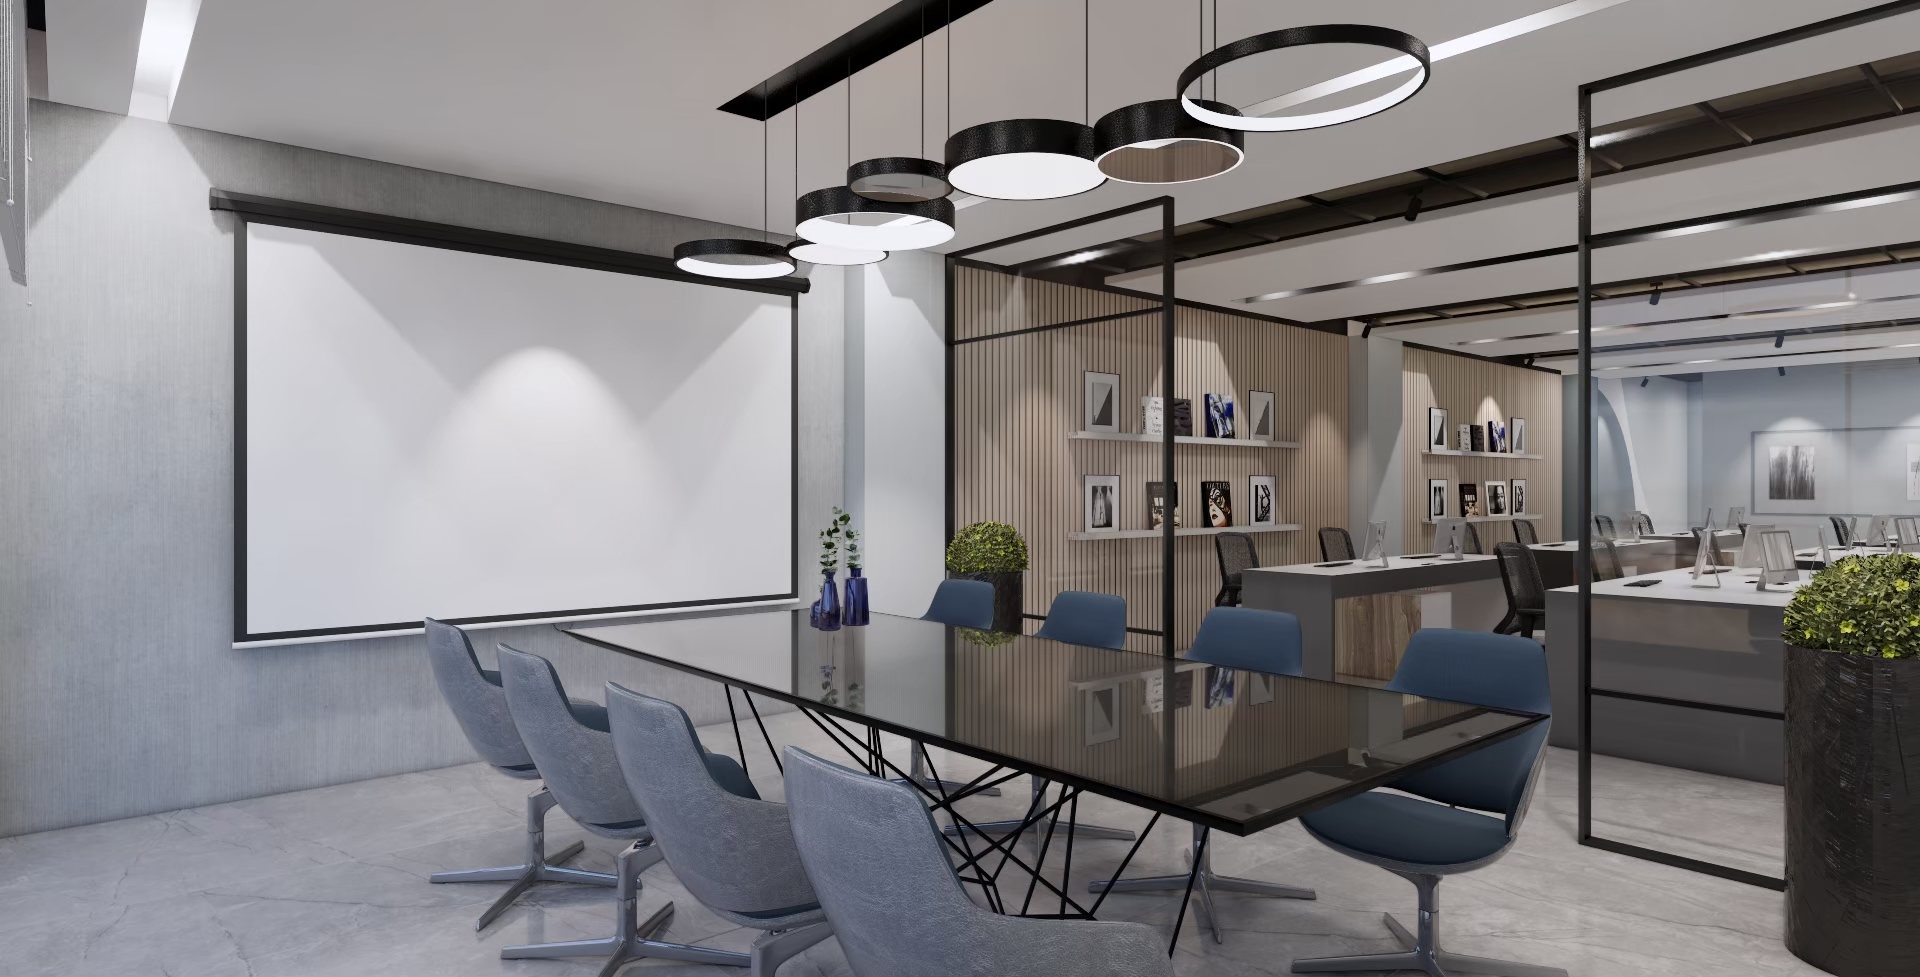 會議室設計，運用玻璃拉門放大空間的視覺感受，也能有效隔絕辦公與會議空間，裡面的黑色玻璃長桌可以容納多人同時開會。